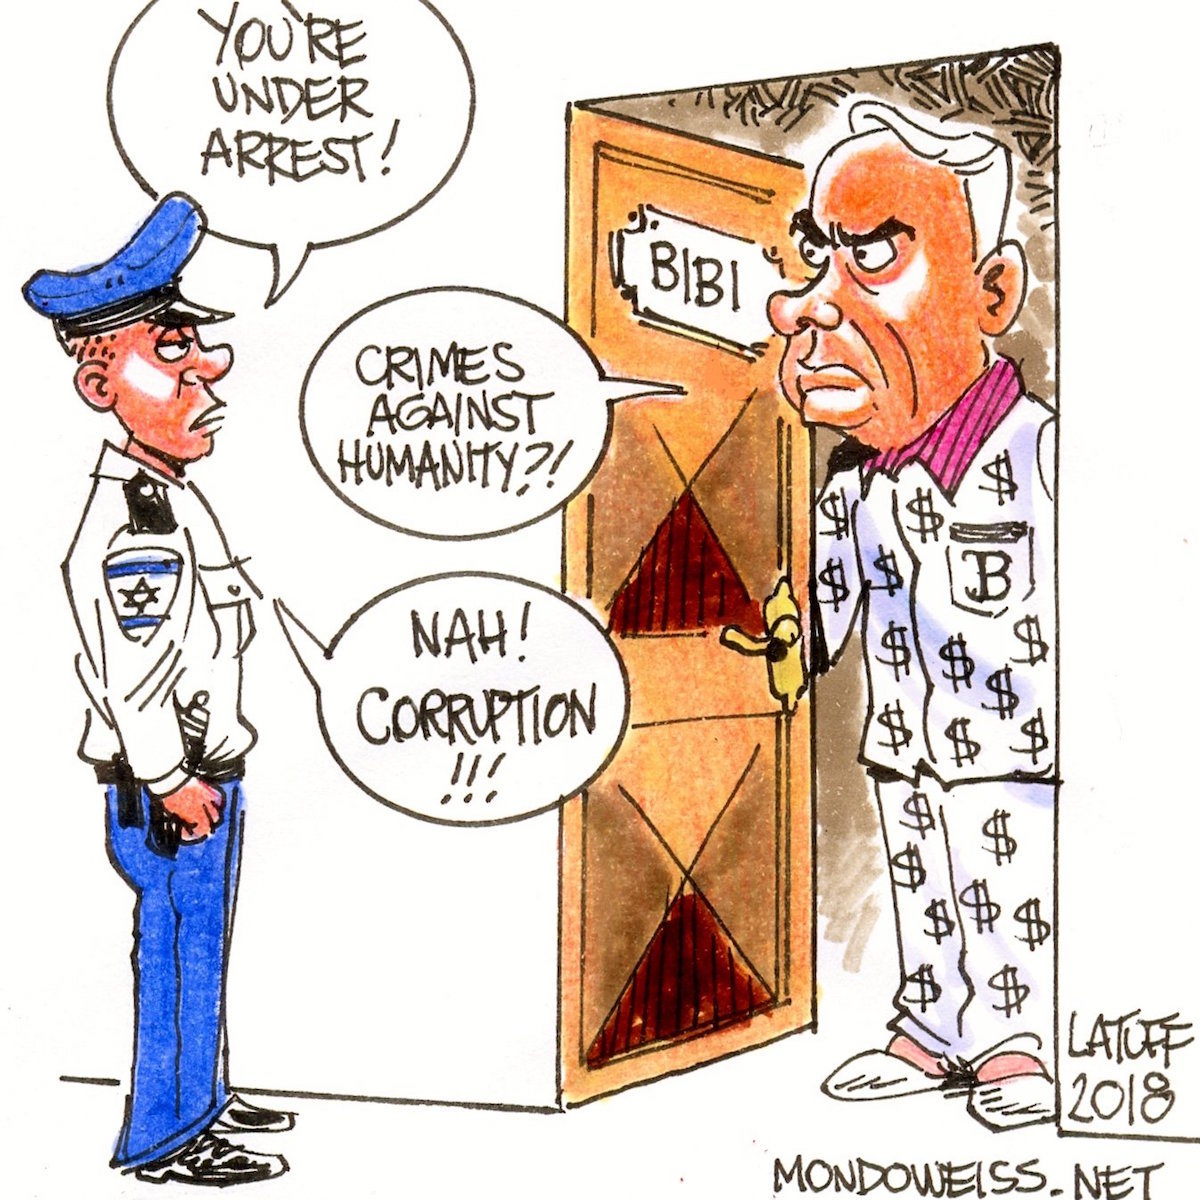 Bibi arrest